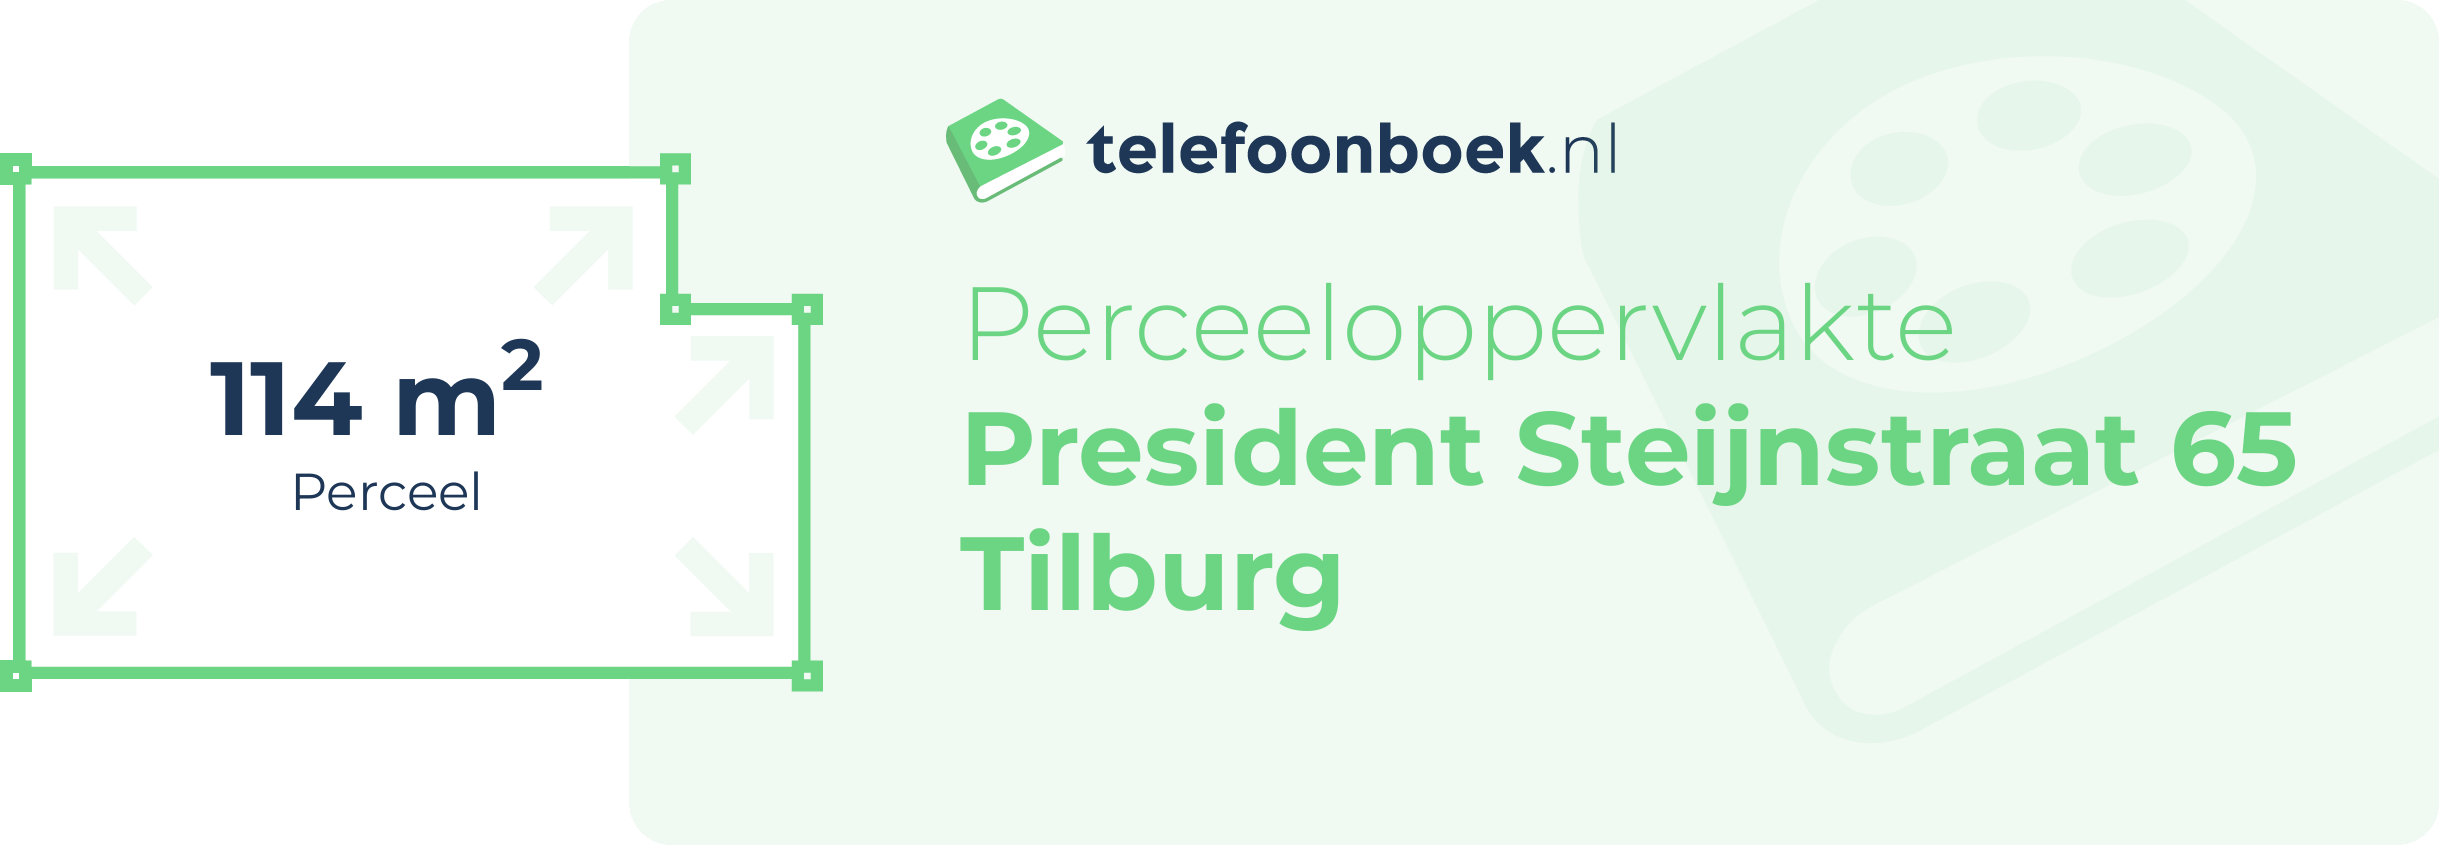 Perceeloppervlakte President Steijnstraat 65 Tilburg